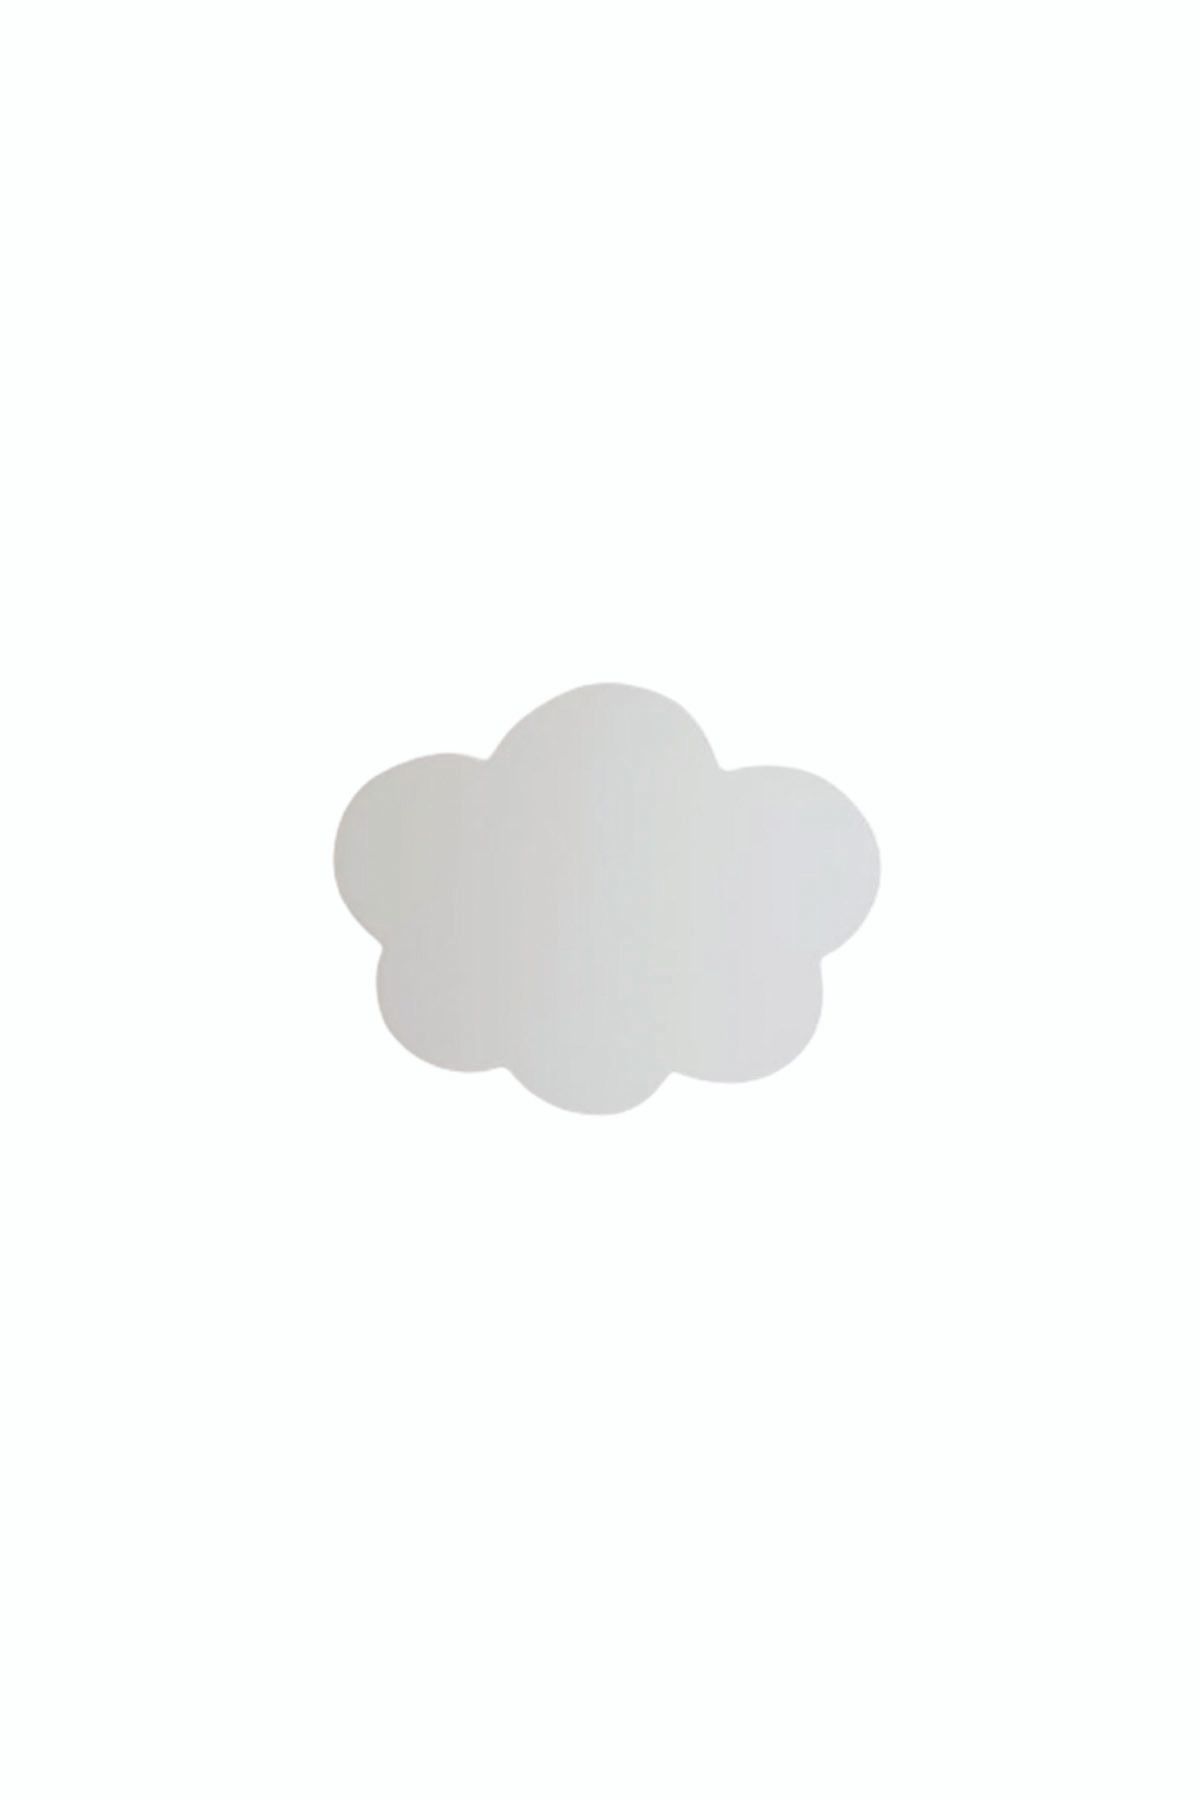 TURUNÇ AKSESUAR Beyaz Bulut Kulp- En 7.5 Cm Boy 6.5 Cm Bebek Çocuk Genç Odası Dolap Çekmece Mobilya Kulpu